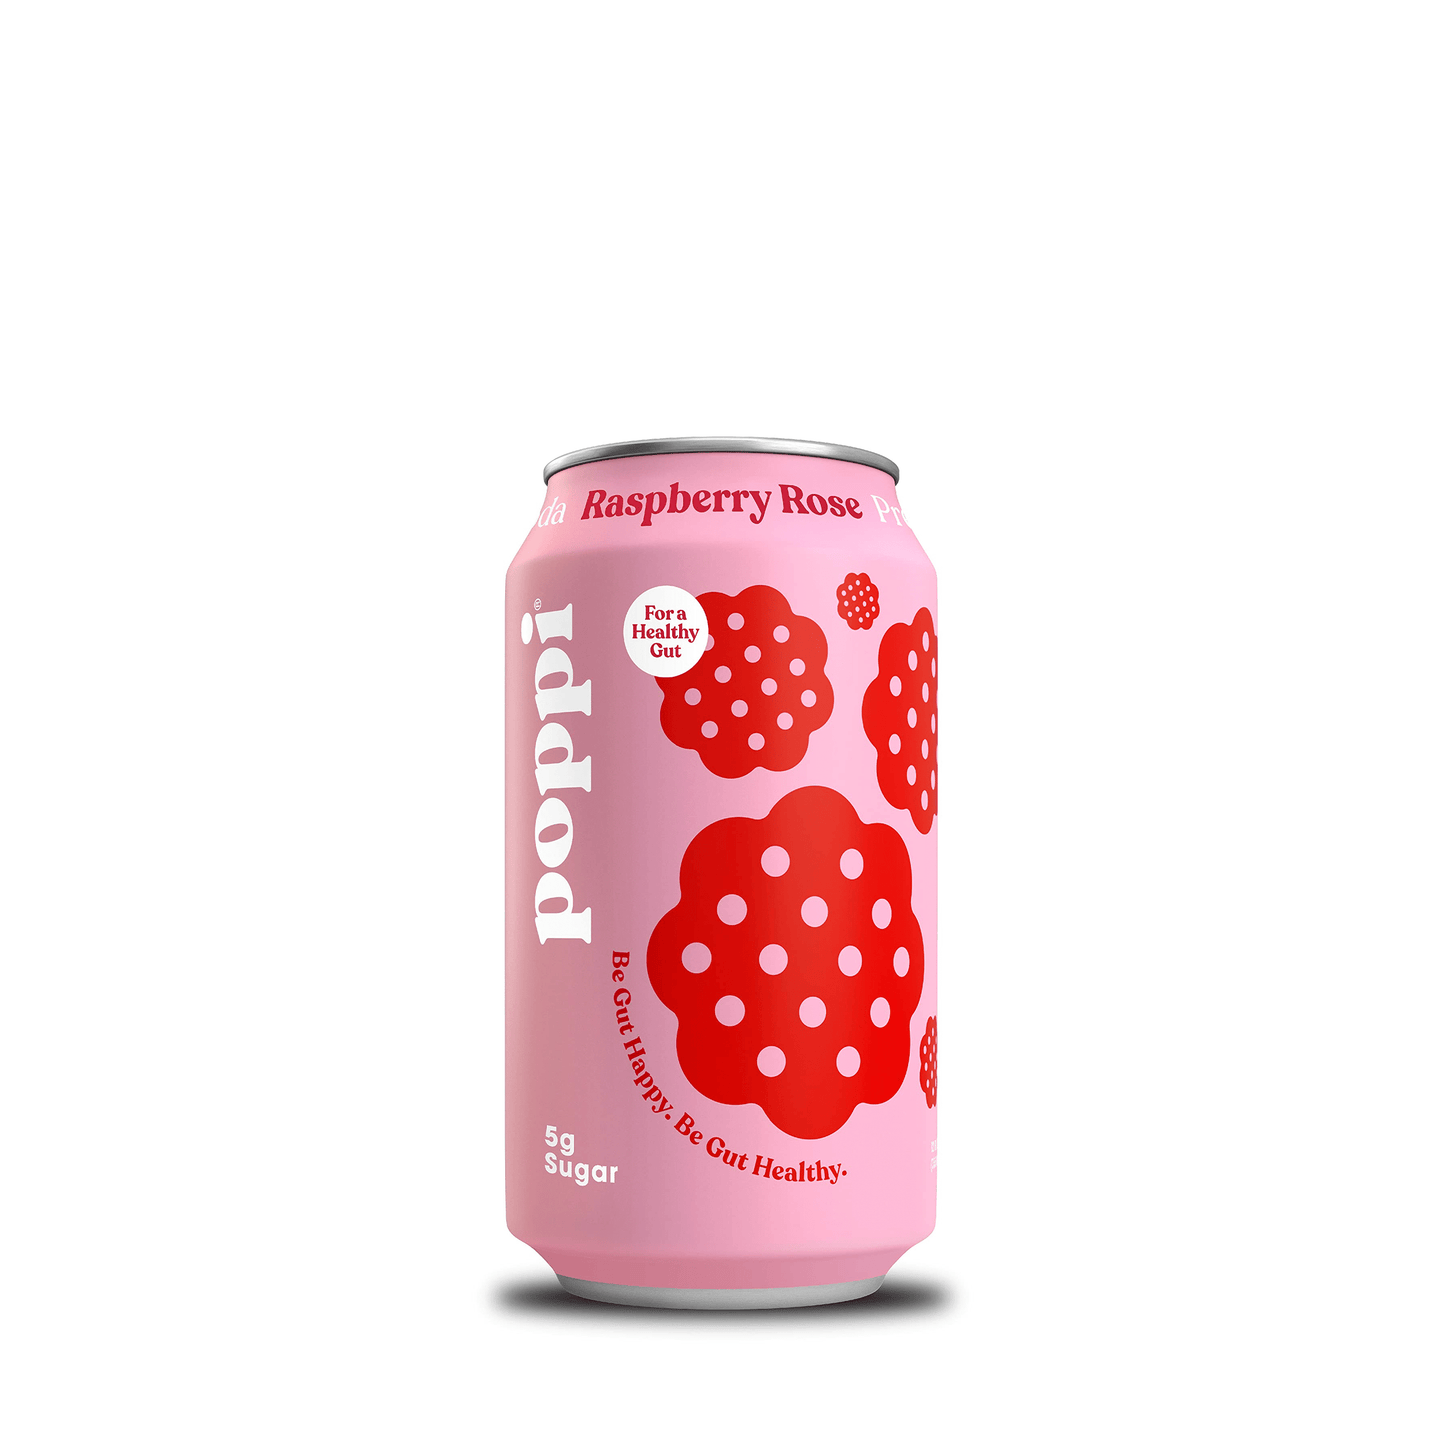 
                  
                    Poppi Soda - Pick 4 Cases
                  
                